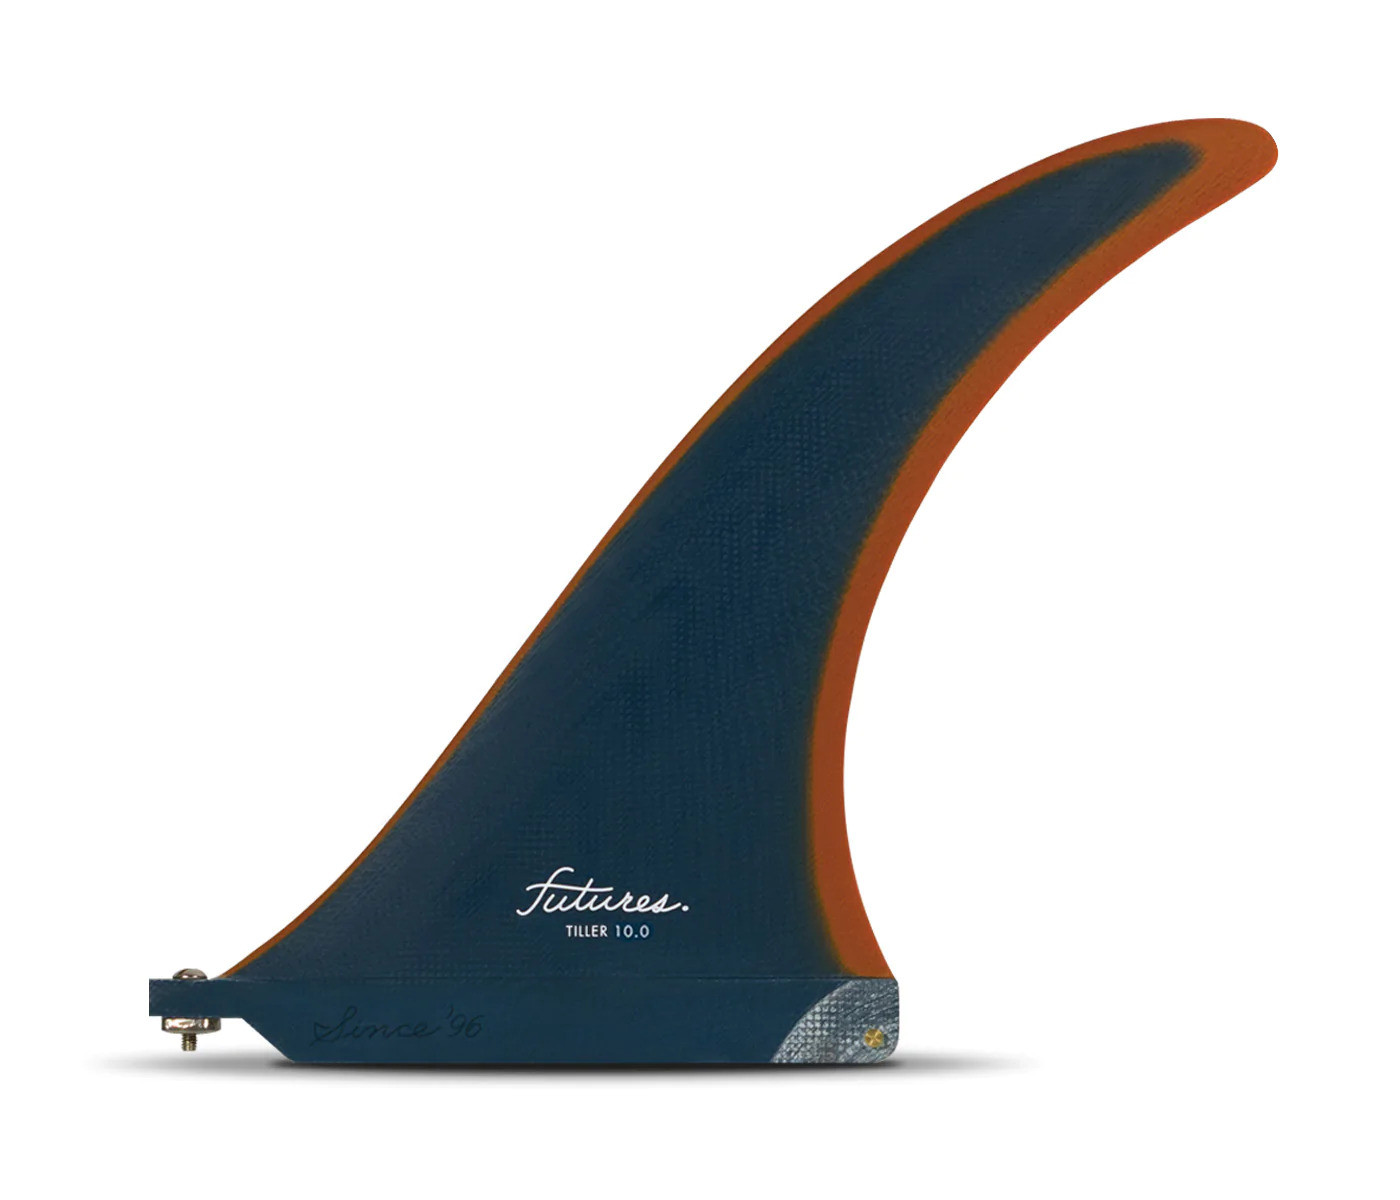 Aleta de longboard - Tiller Fiberglass solid Cobalt / Patina 10.0", FUTURES.